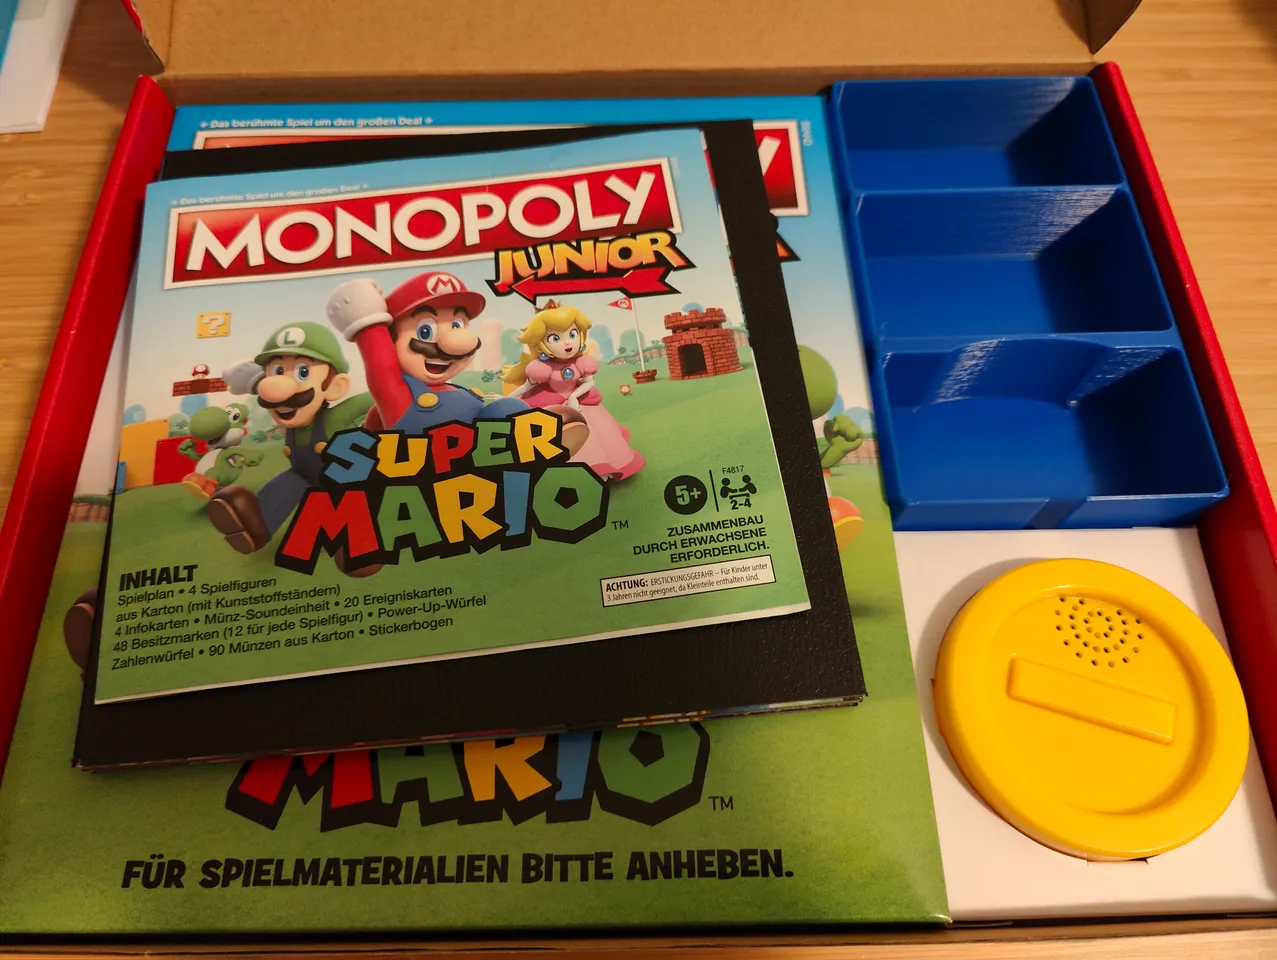 Monopoly Junior - Super Mario Edition